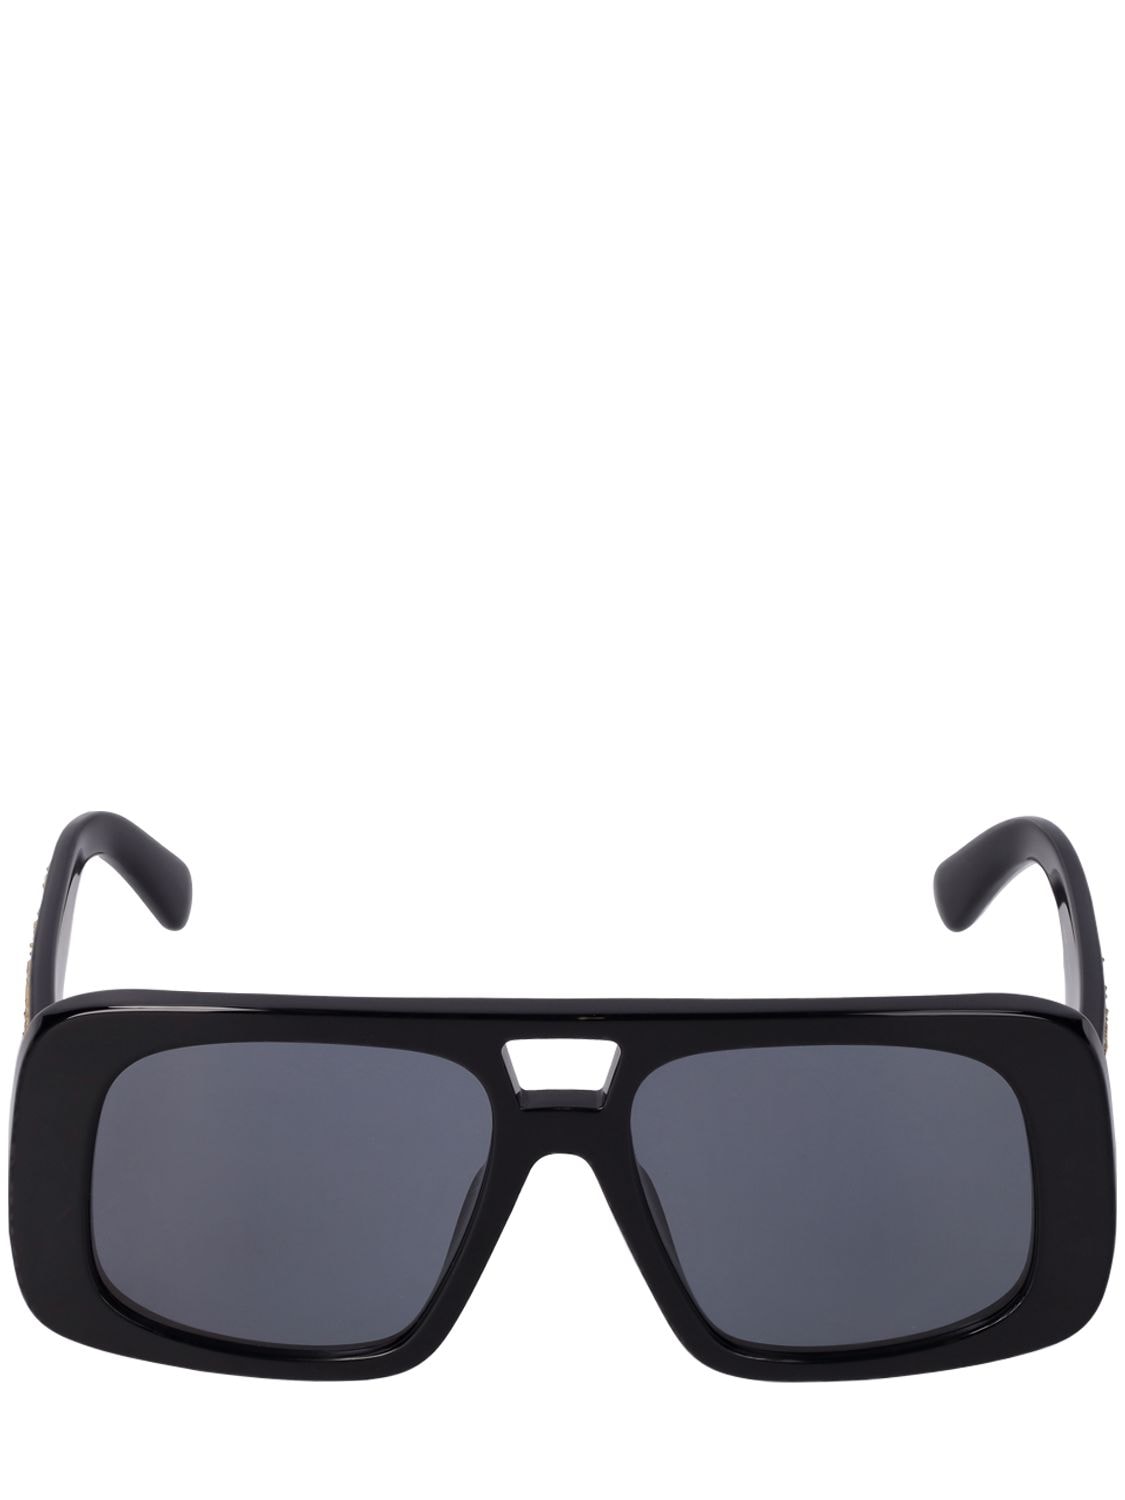 Image of Squared Pilot Bio-acetate Sunglasses